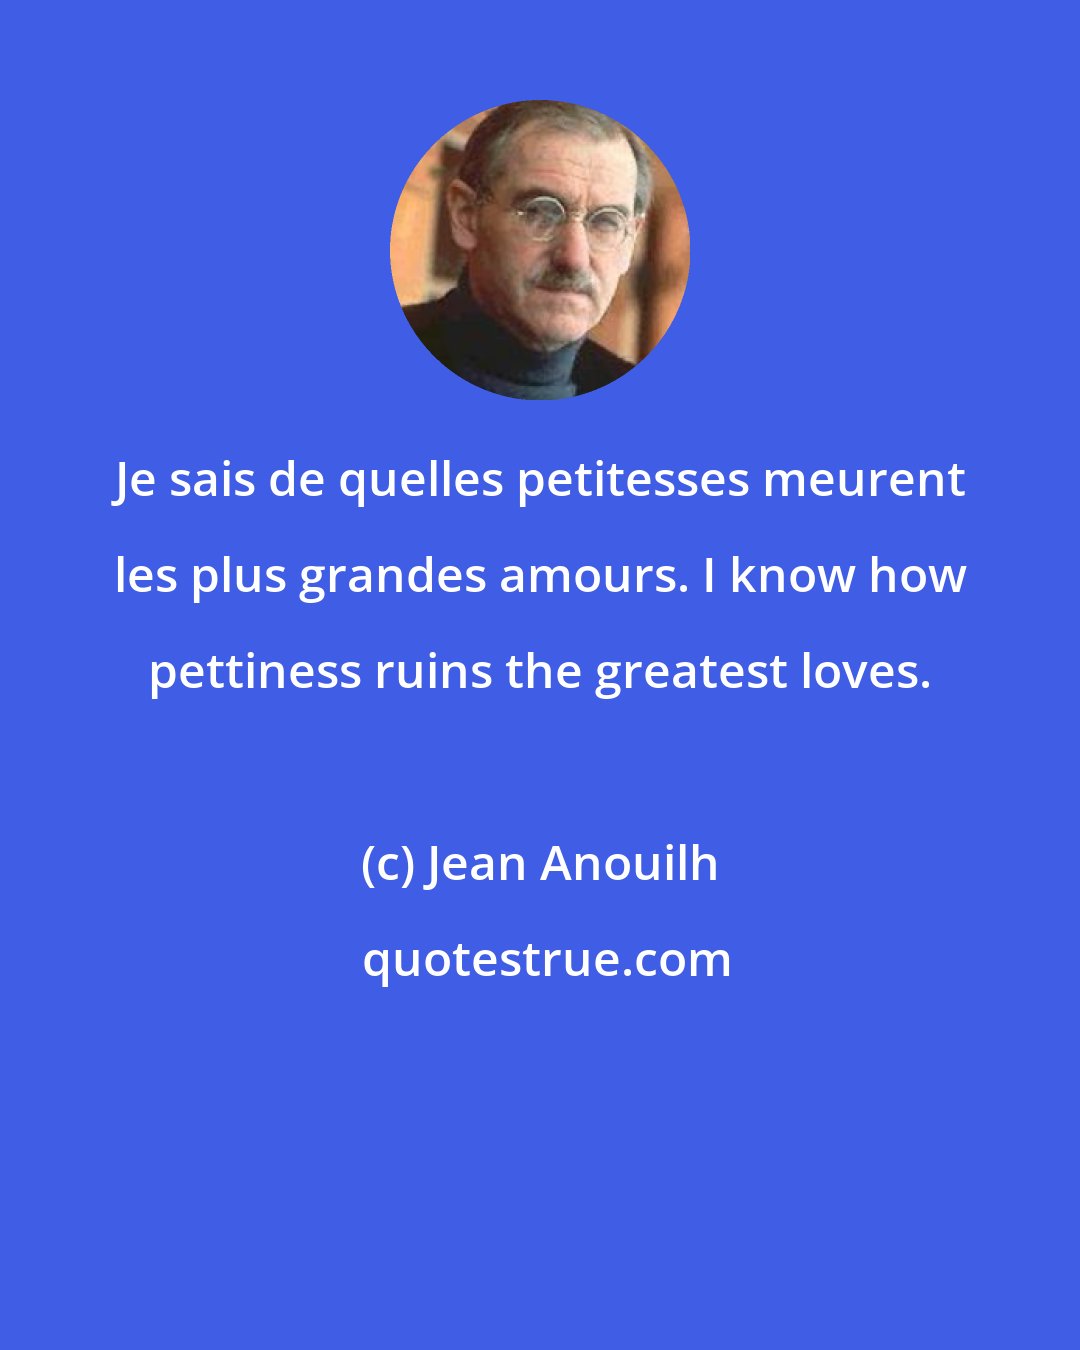 Jean Anouilh: Je sais de quelles petitesses meurent les plus grandes amours. I know how pettiness ruins the greatest loves.